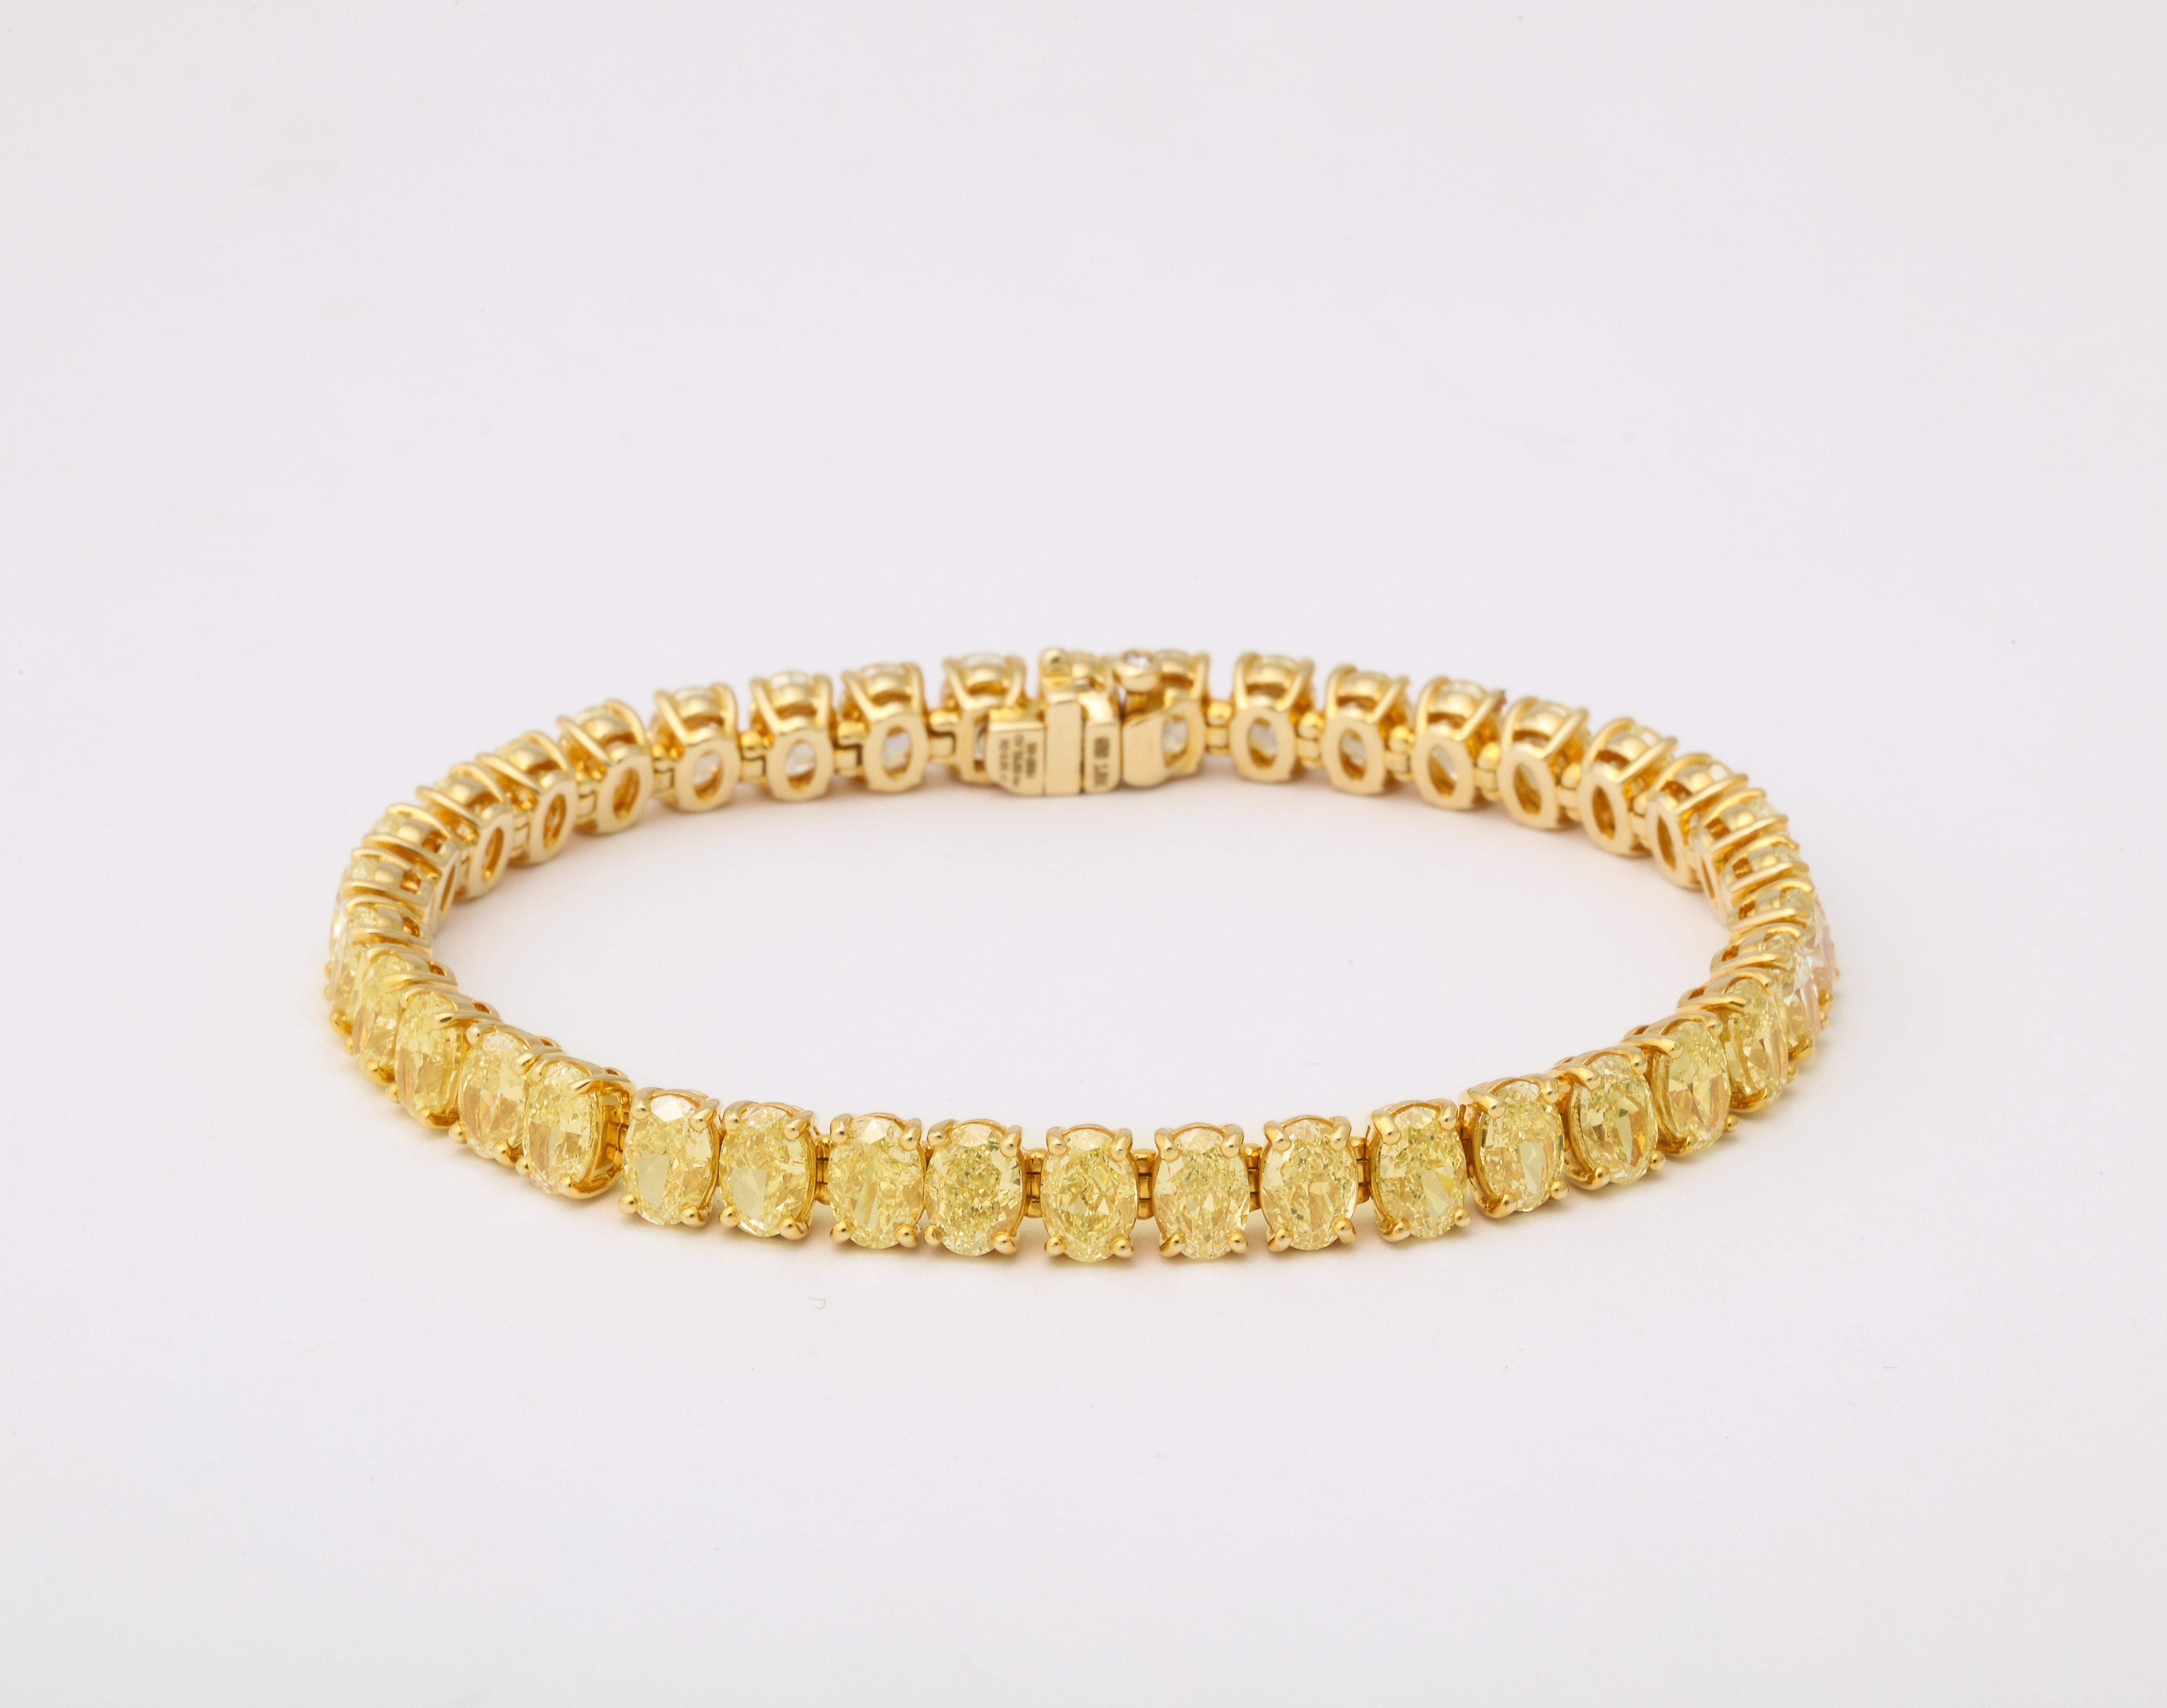 
Eine unglaubliche Sammlung von ovalen gelben Diamanten, die wunderschön in ein Armband montiert sind. 

19,06 Karat gelber Diamanten - jeder ovale Diamant wiegt durchschnittlich ein halbes Karat. 

Eingefasst in eine maßgefertigte Fassung aus 18k